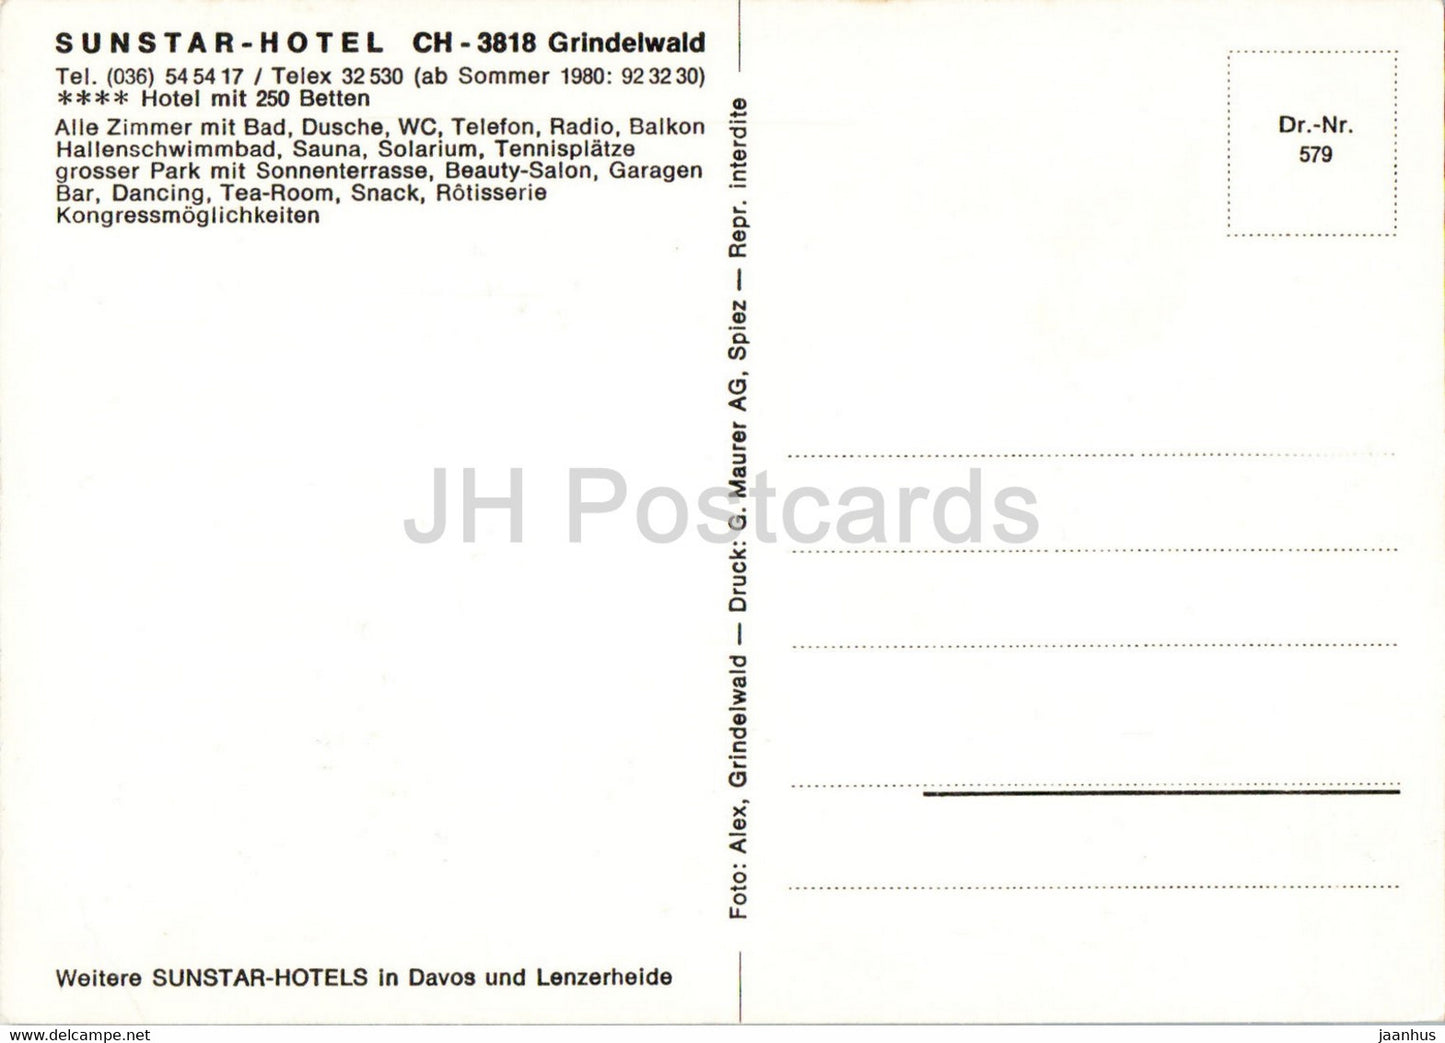 Sunstar Hotel Grindelwald - Switzerland - unused